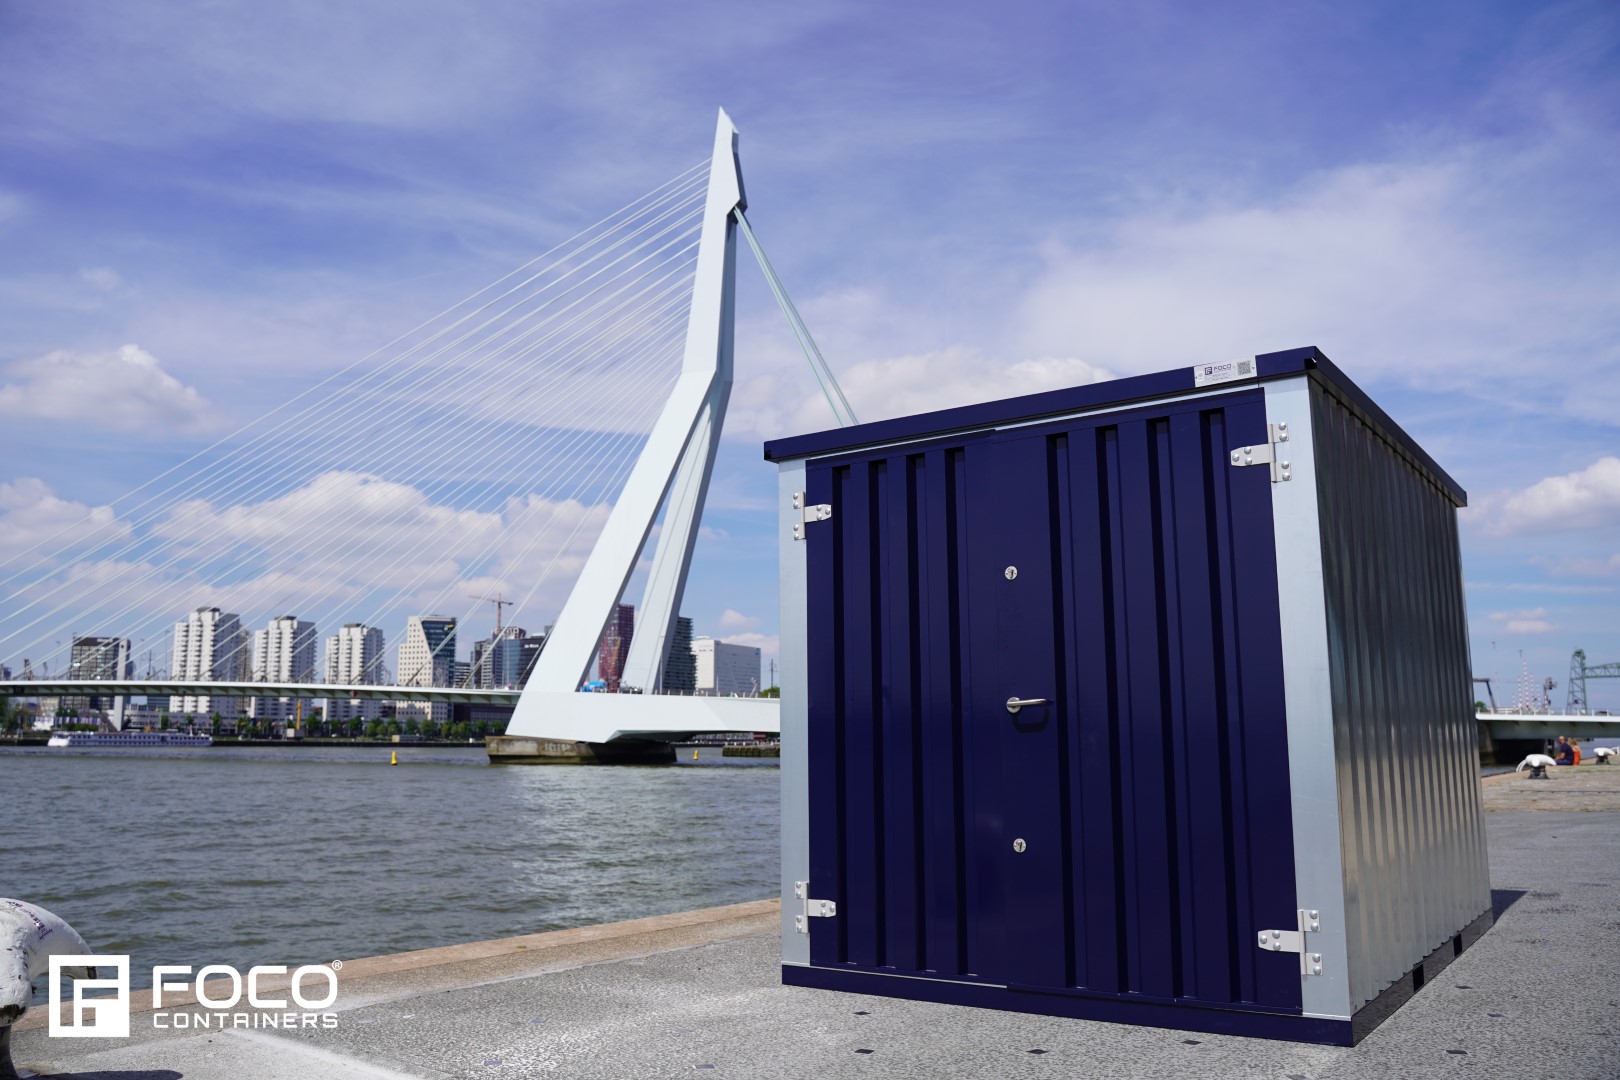 Fordonscontainer 3x2 meter (silver och blå) med Rottendams Erasmusbron i bakgrunden